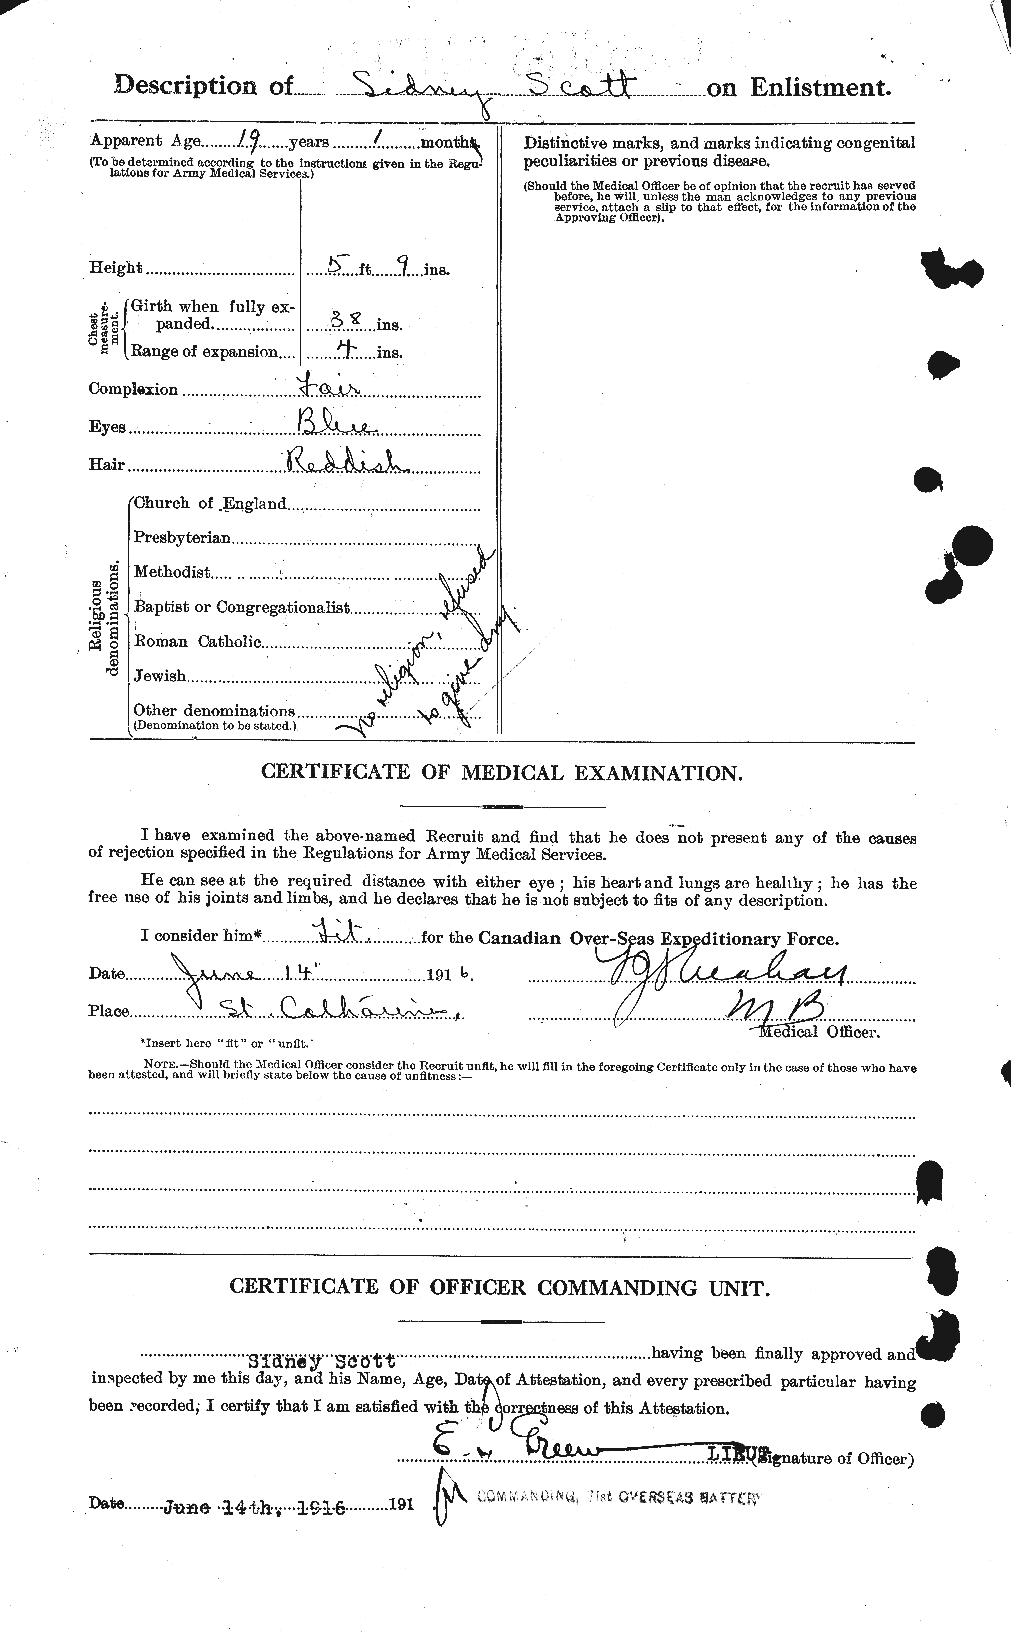 Dossiers du Personnel de la Première Guerre mondiale - CEC 088850b